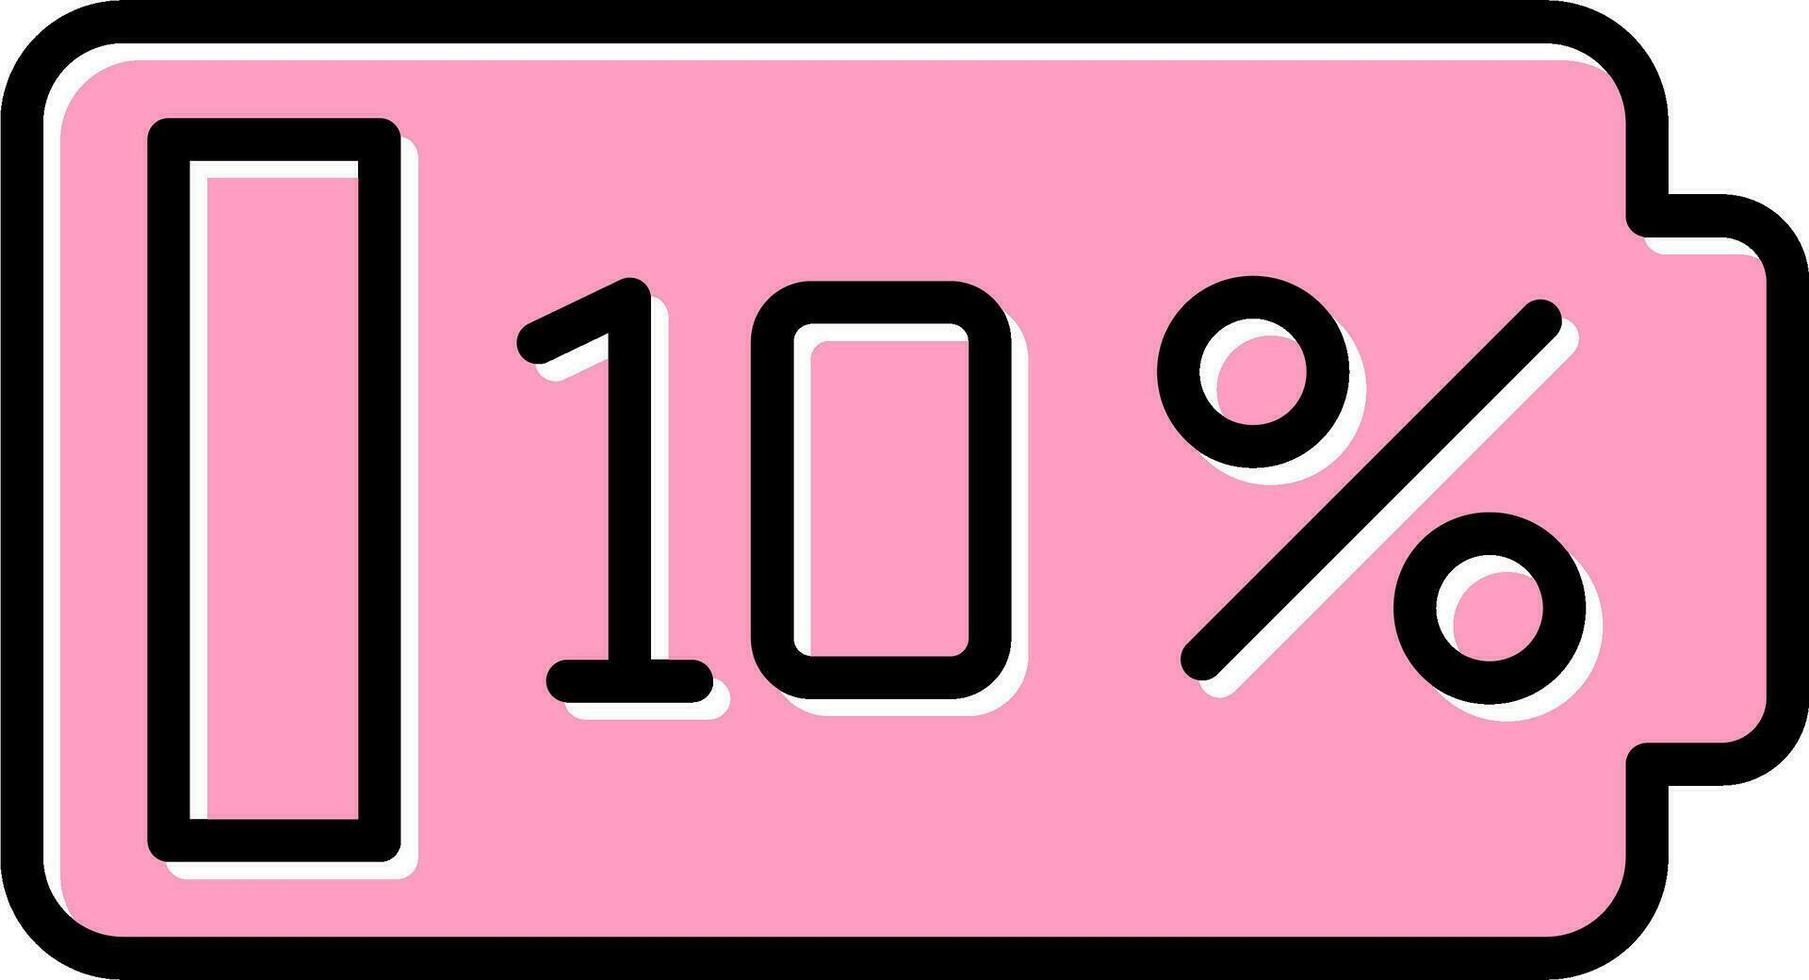 dix pour cent vecteur icône